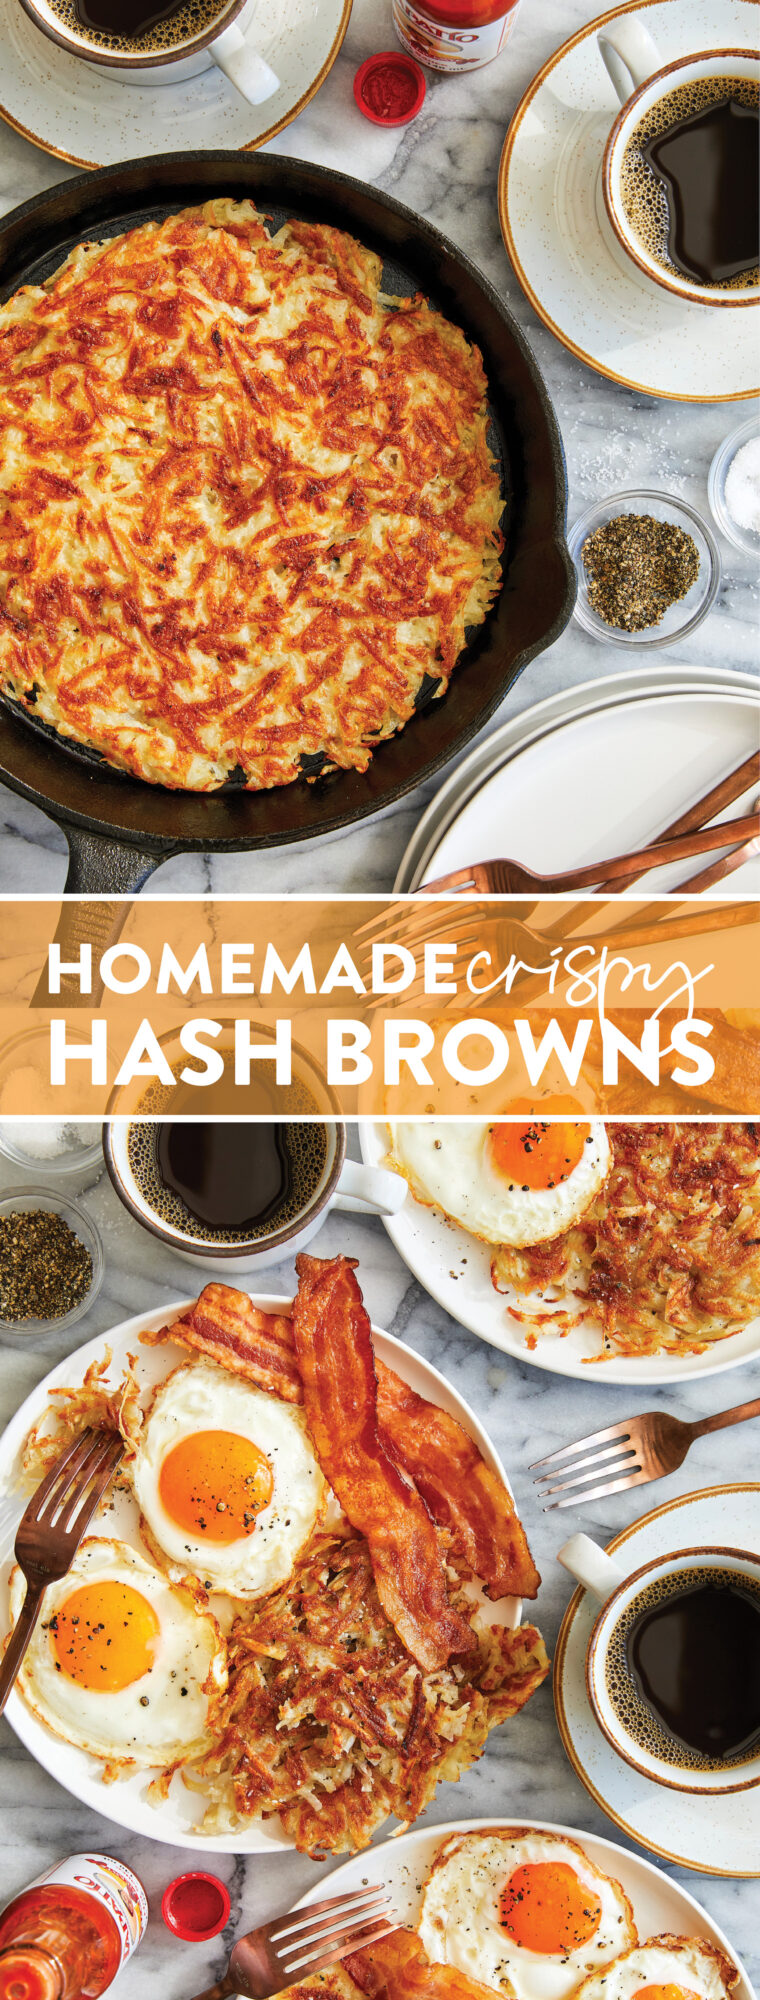 Hausgemachte Crispy Hash Browns – Schnell, einfach und SO UNGLAUBLICH KNUSPRIG!  Kommt jedes mal perfekt raus.  Mit Ketchup und scharfer Soße servieren!